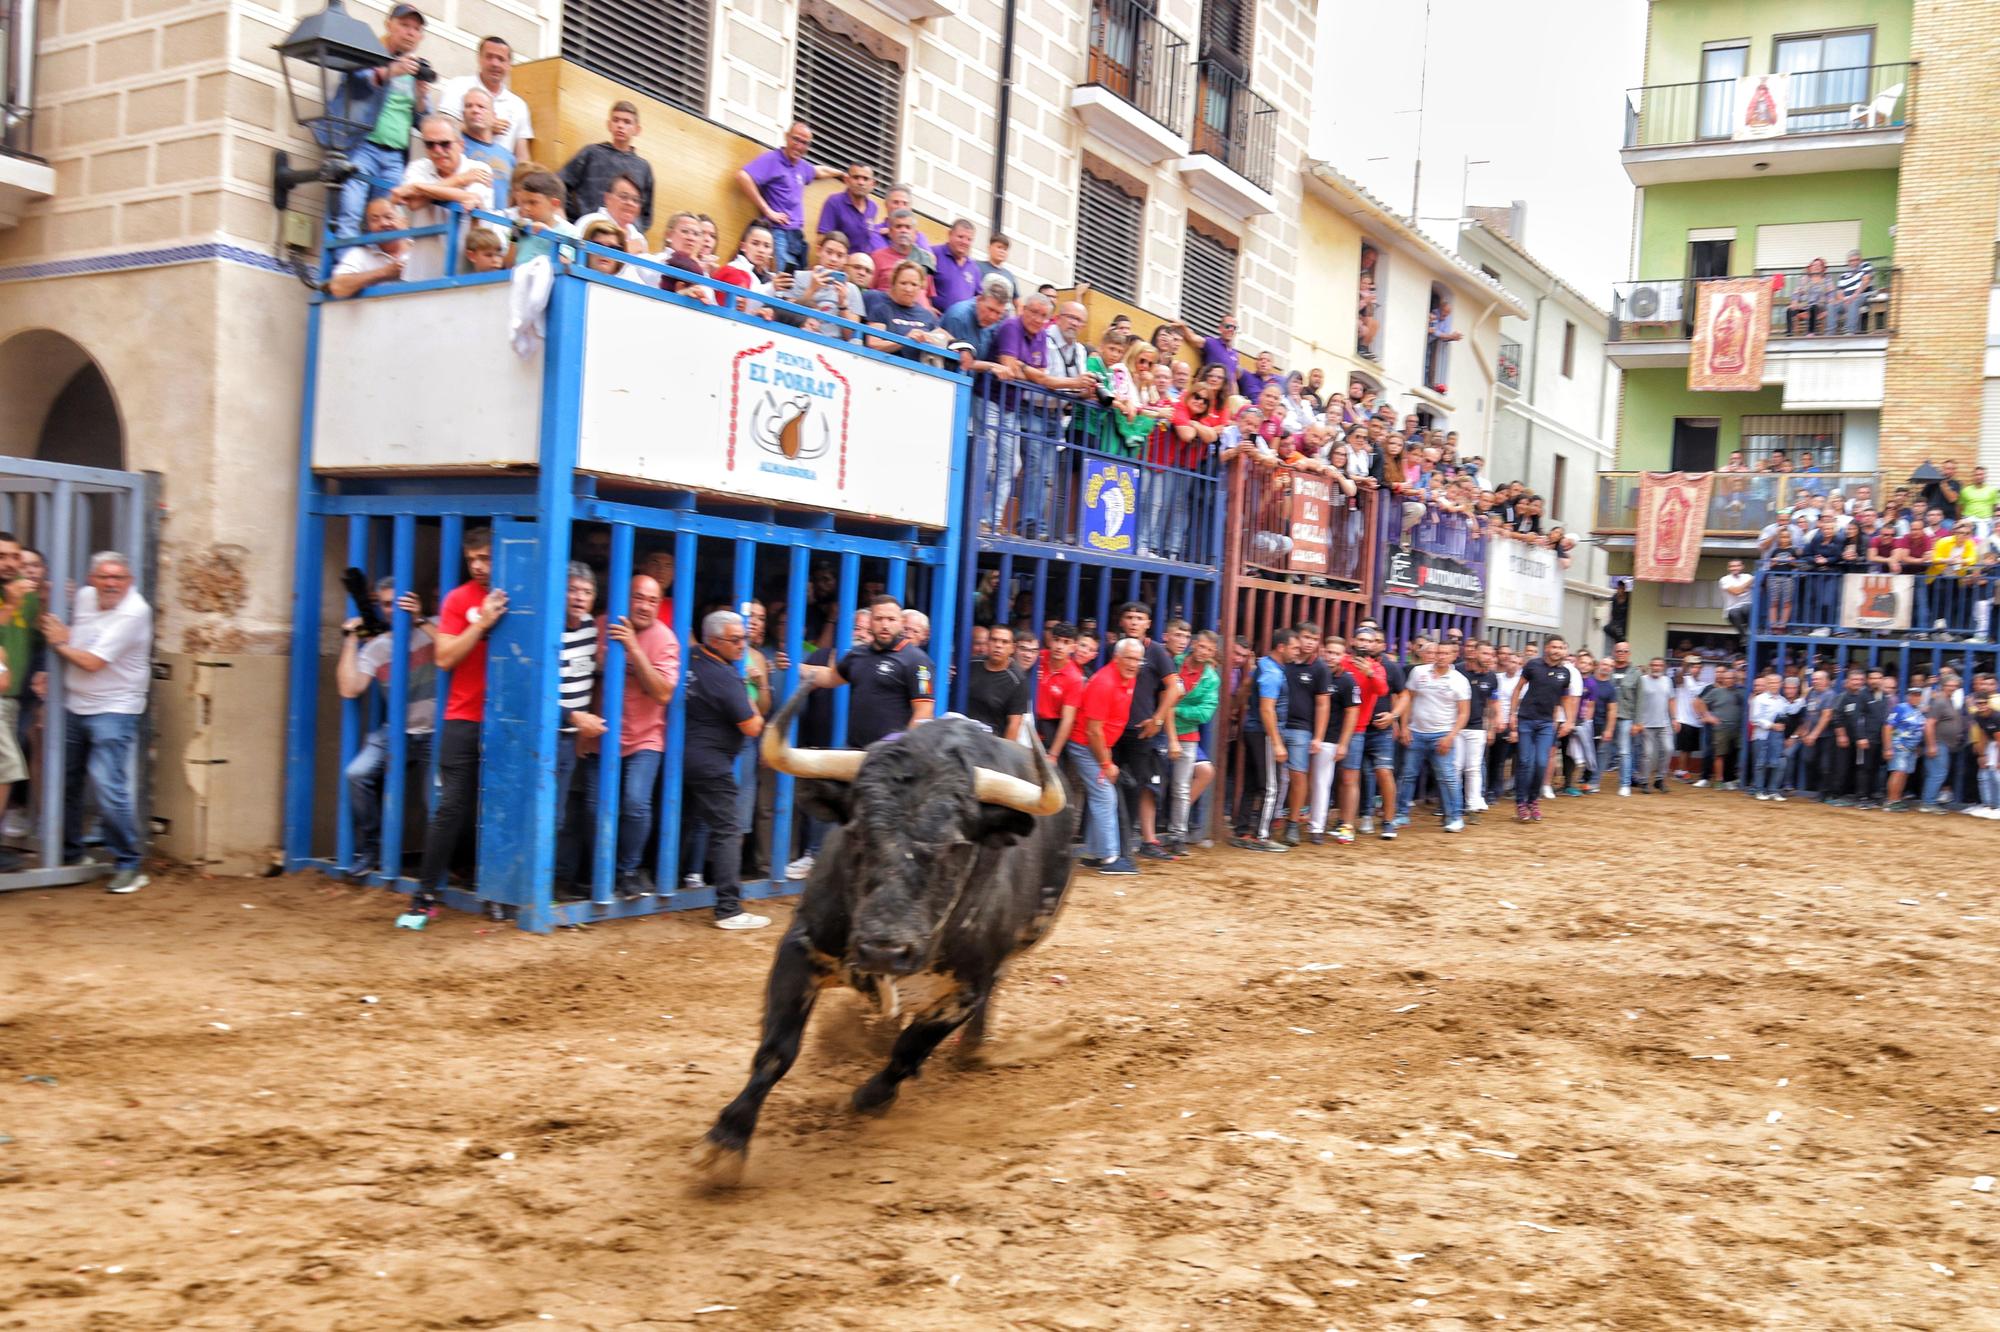 Fotos de ambiente y de los toros de la tarde taurina del martes de fiestas en Almassora